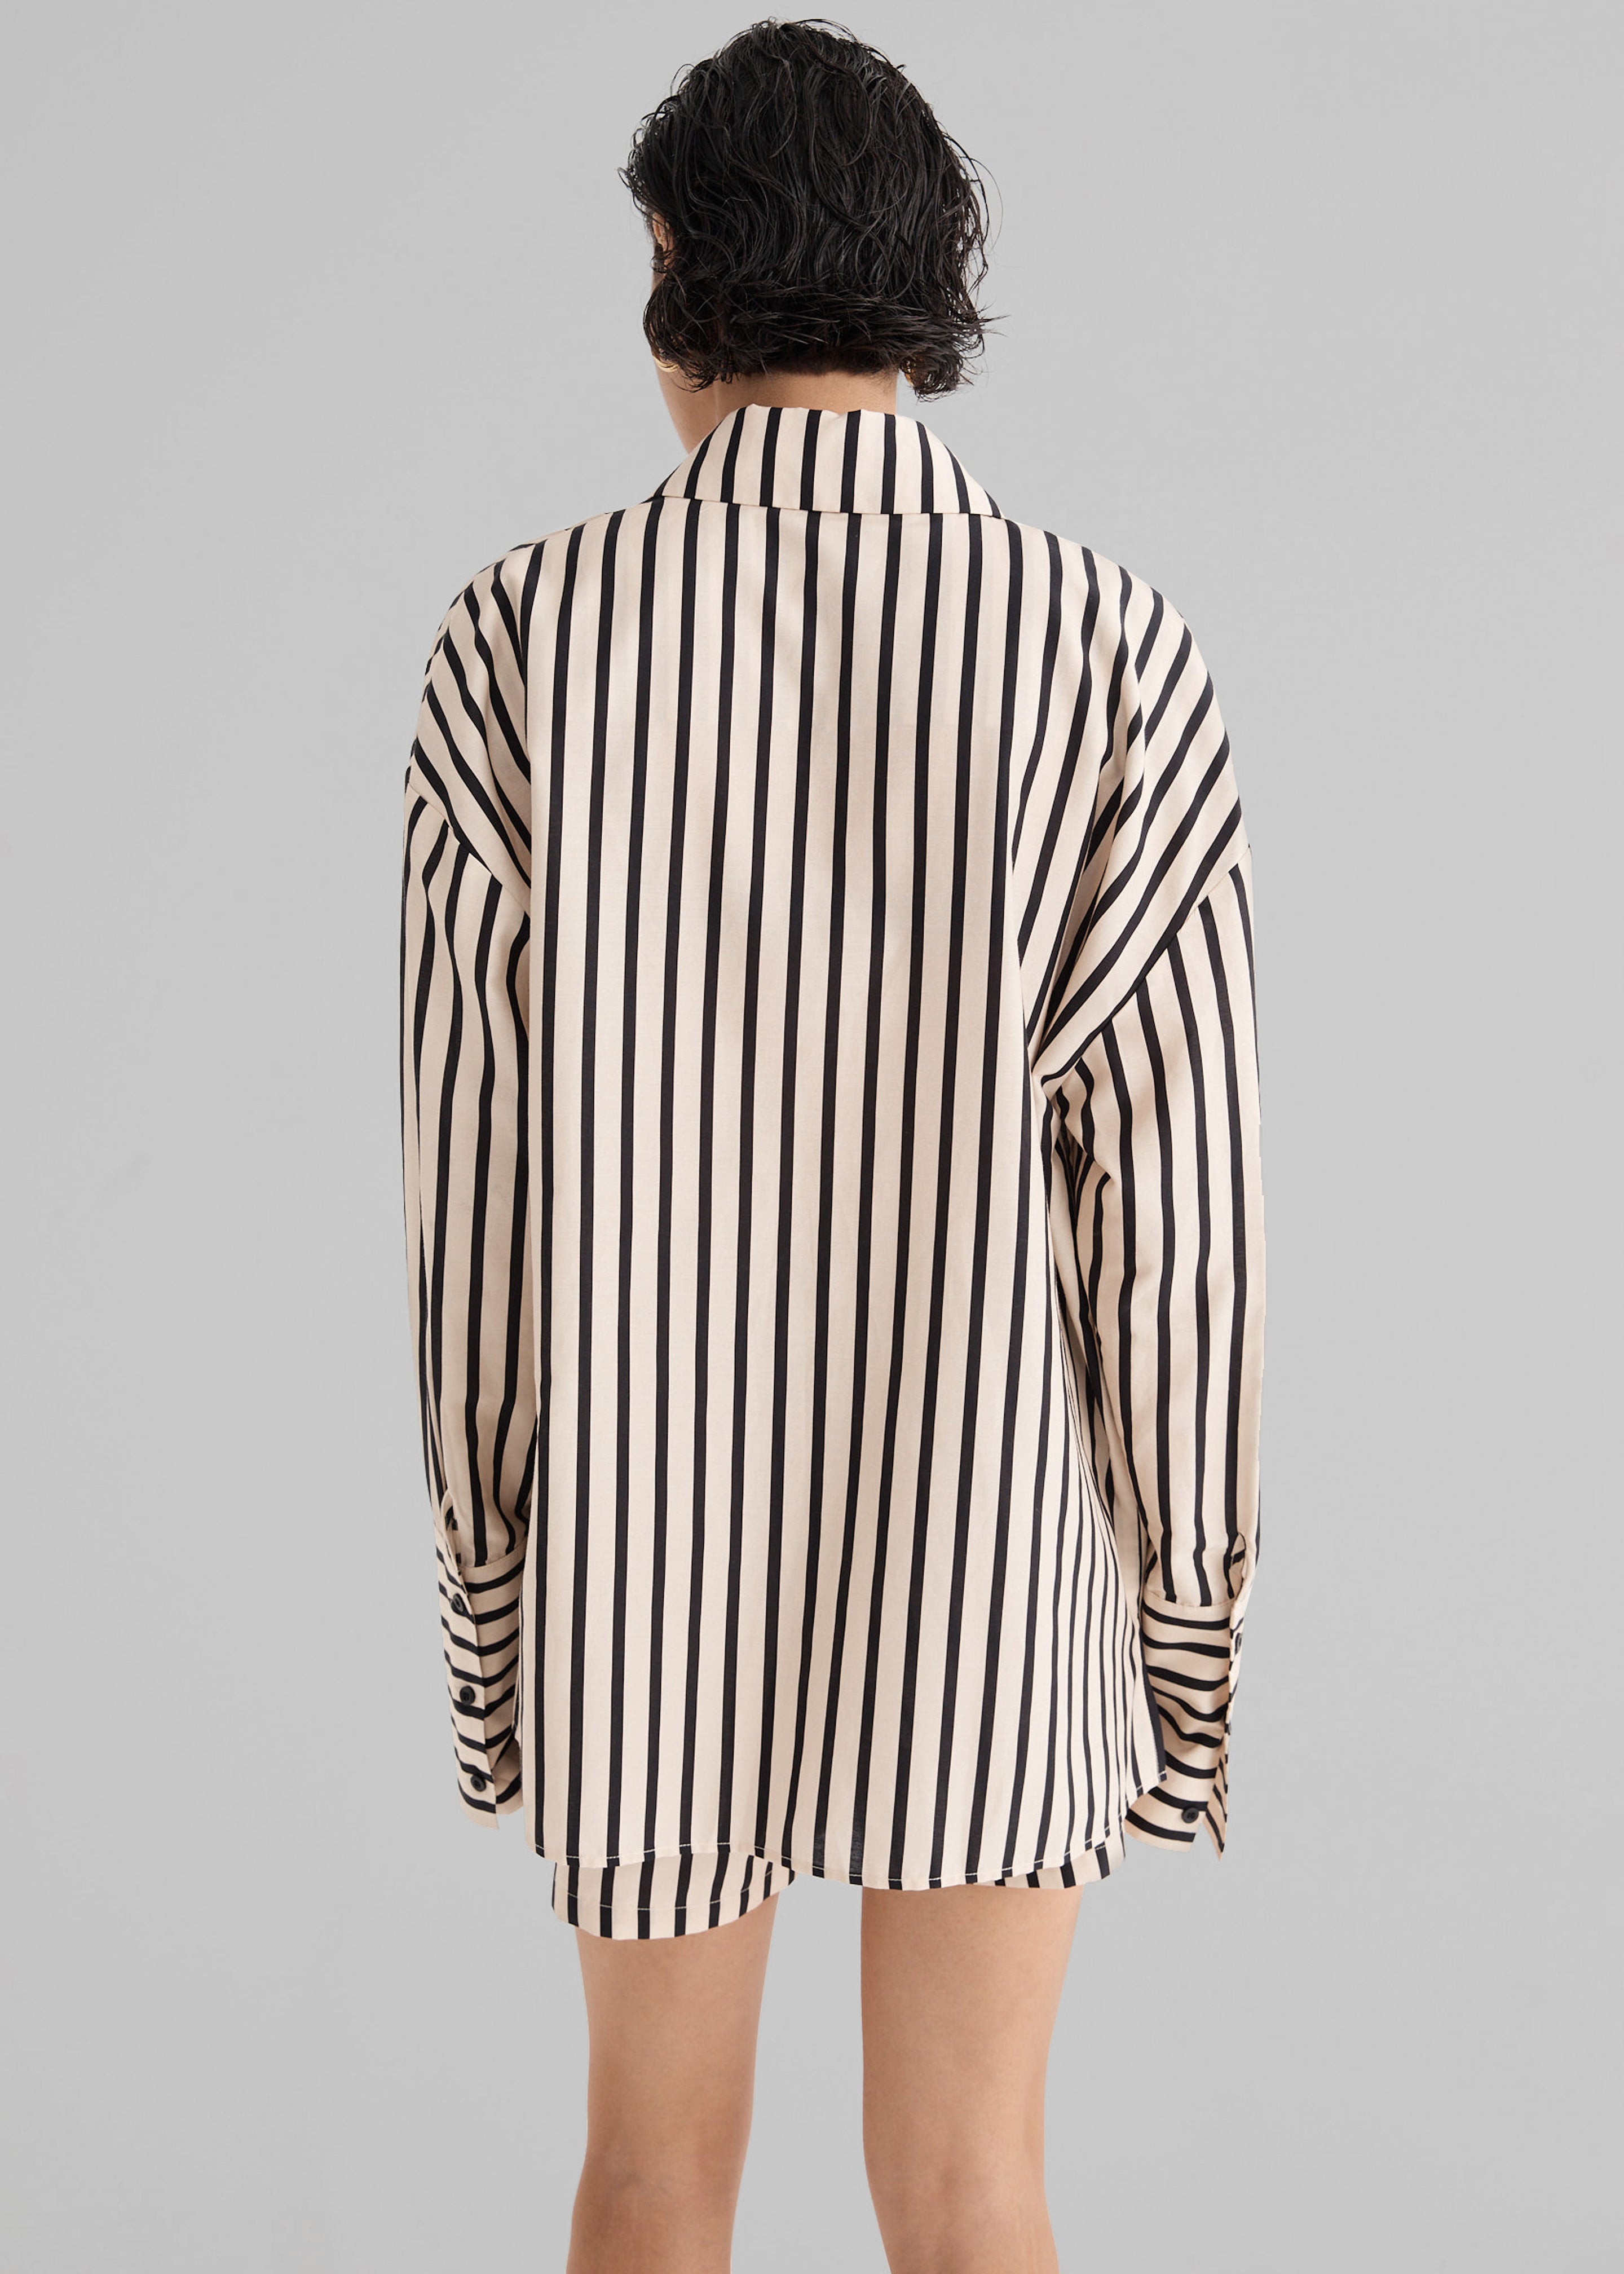 Solaqua The Amelie Shirt - Classico Stripe - 7